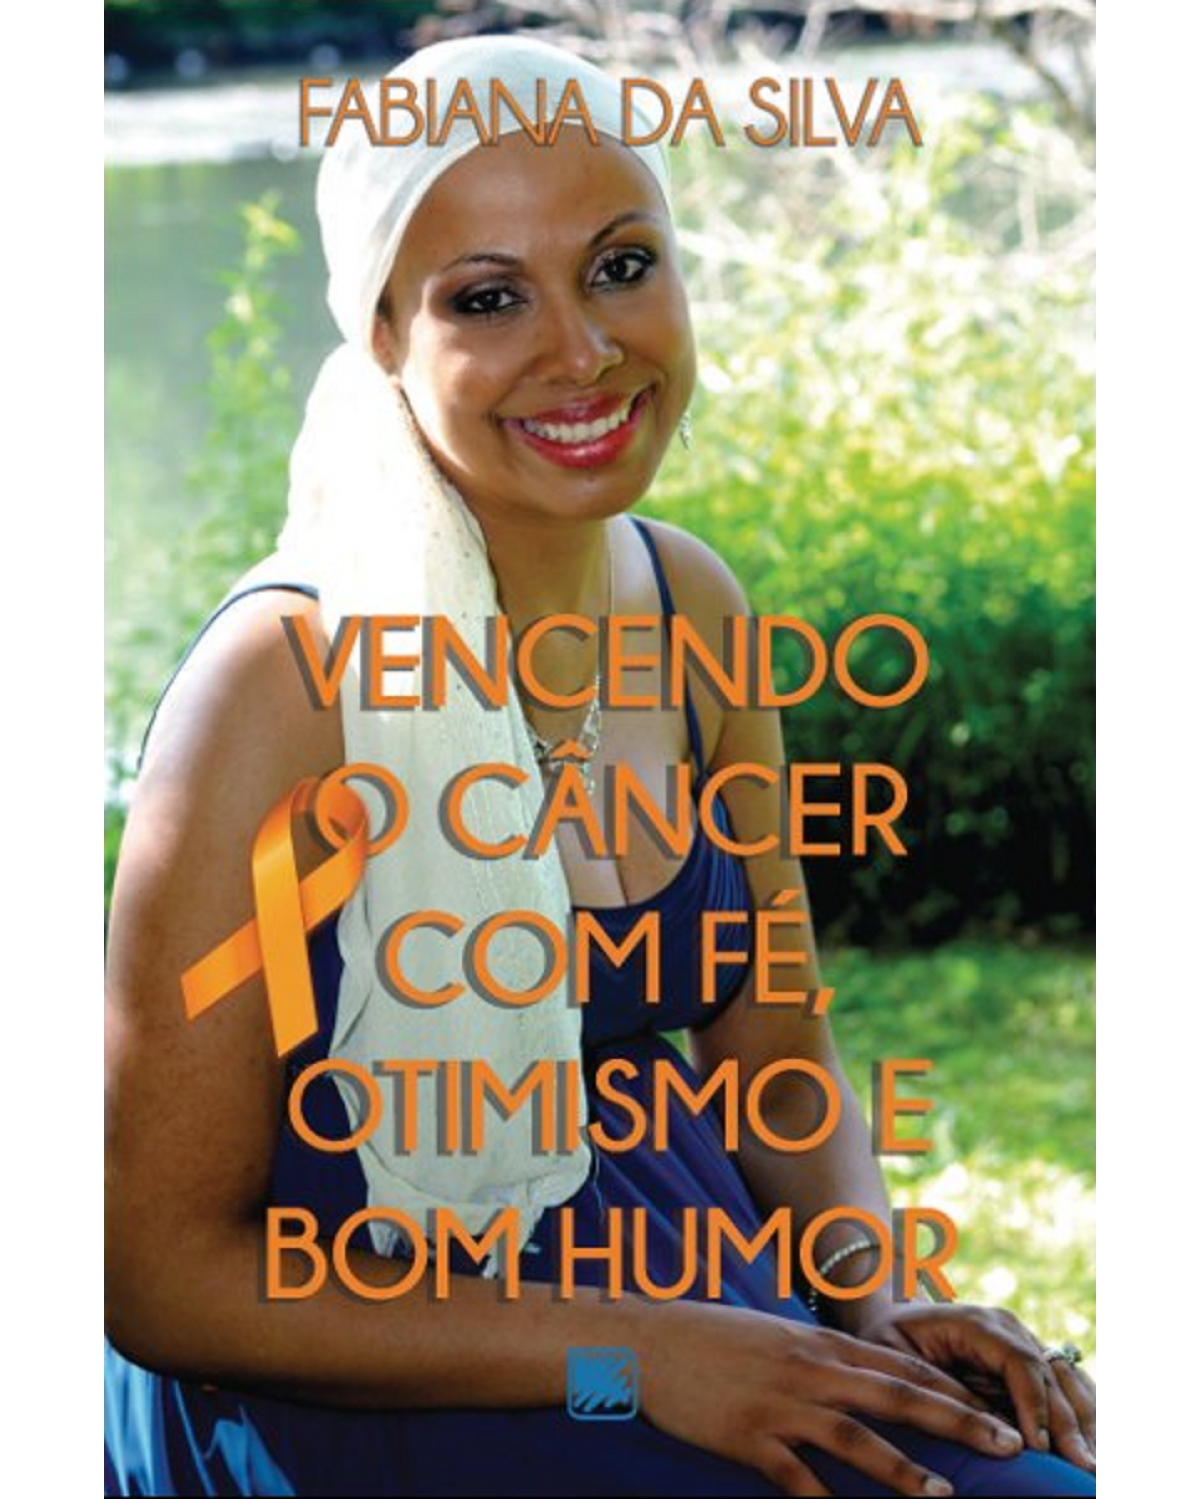 Vencendo o câncer com fé, otimismo e bom humor - 1ª Edição